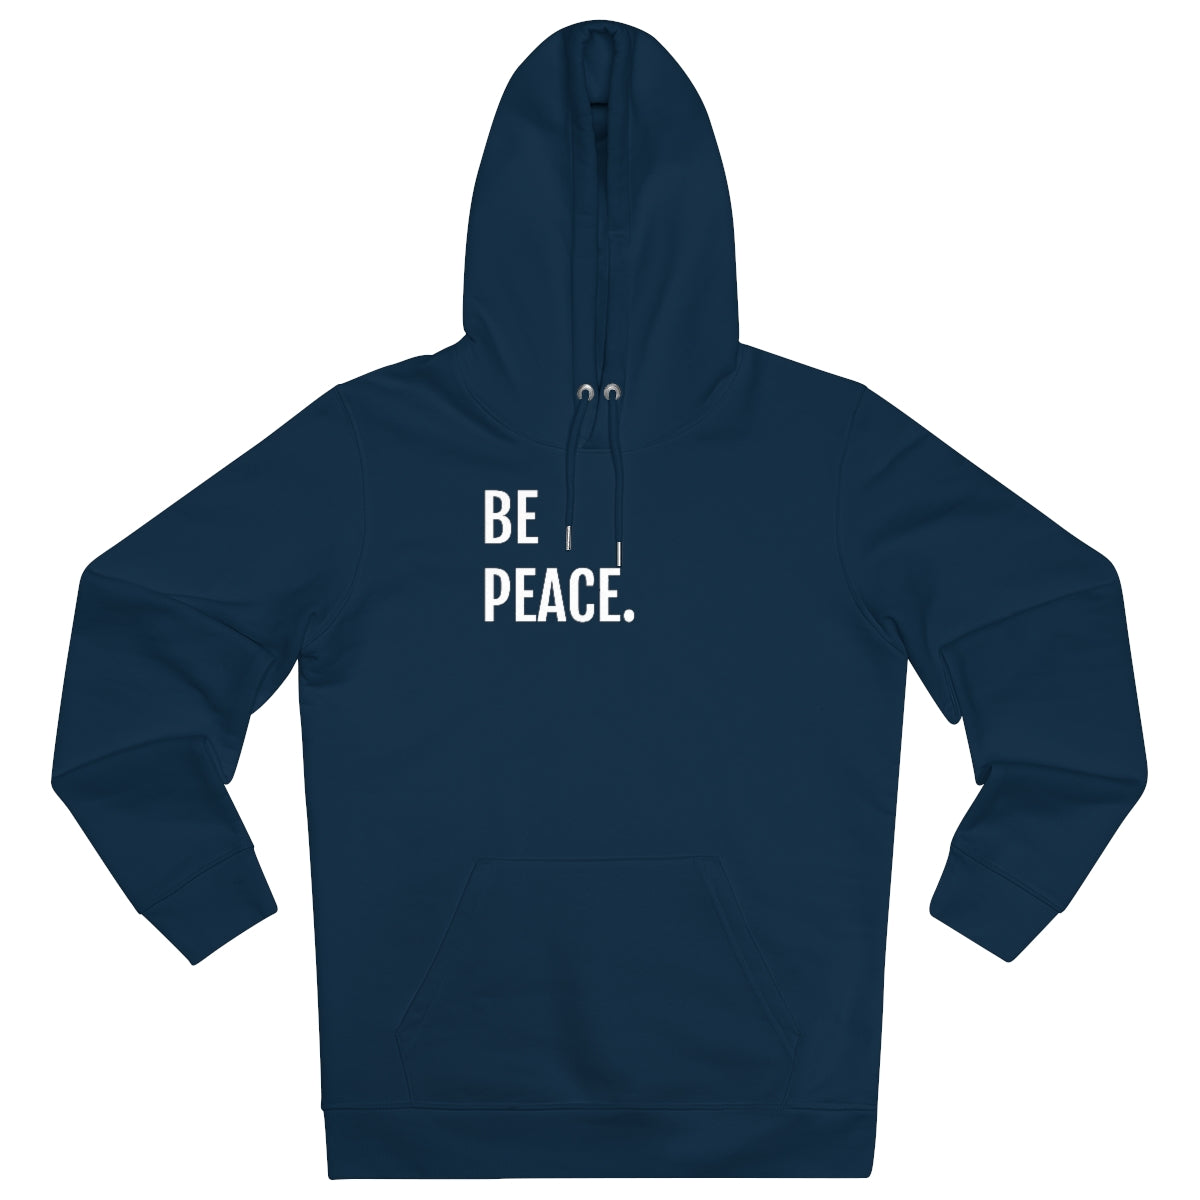 BE PEACE. - Unisex Cruiser Hoodie